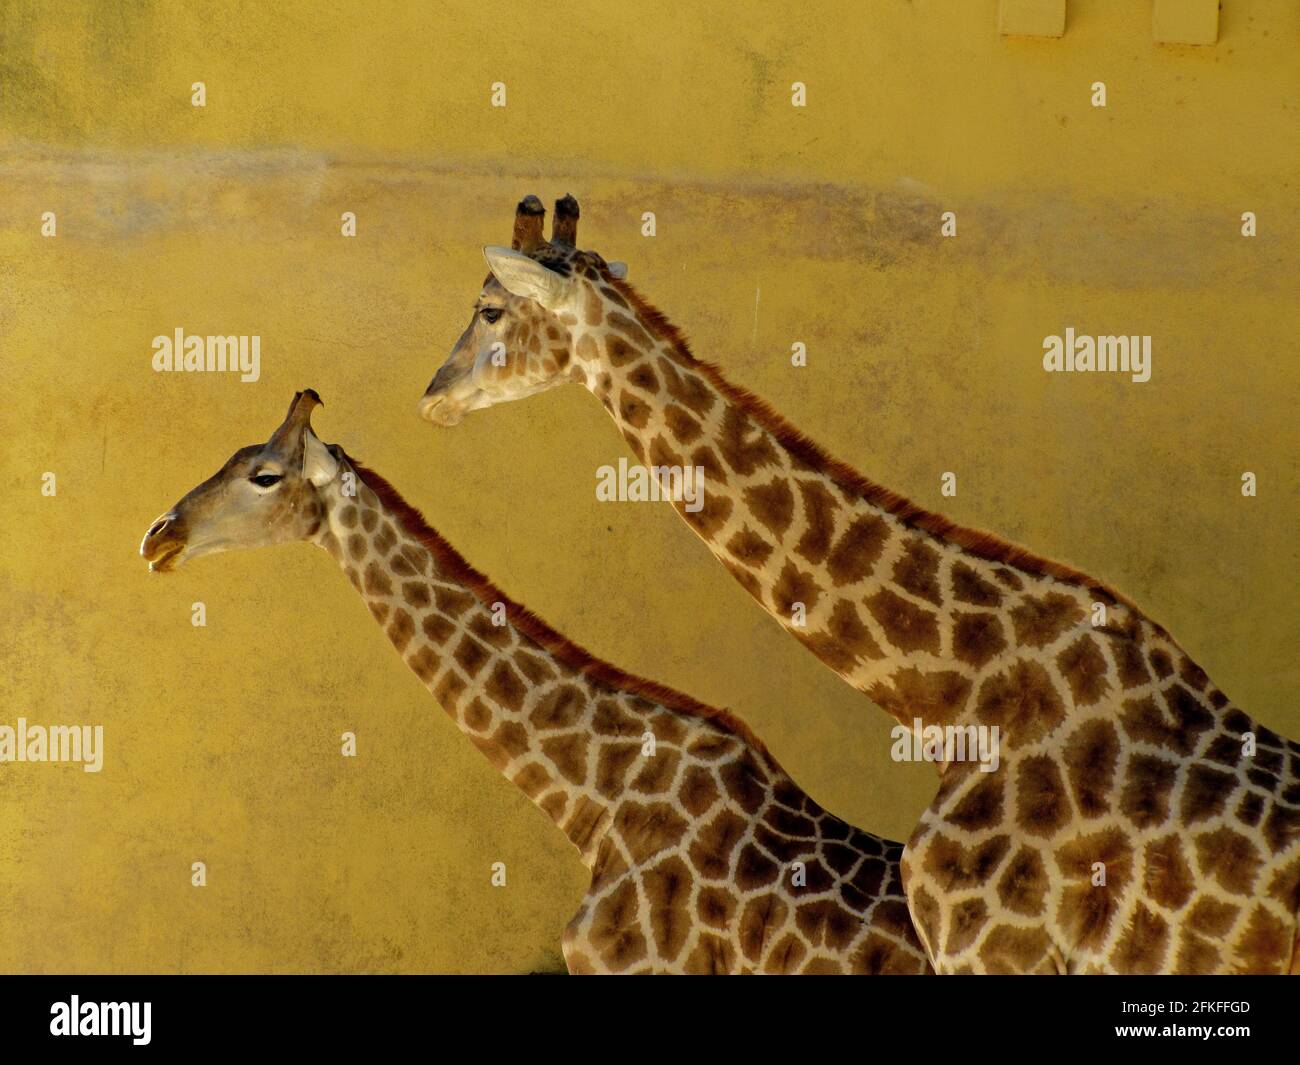 Girafe, Giraffe Stock Photo